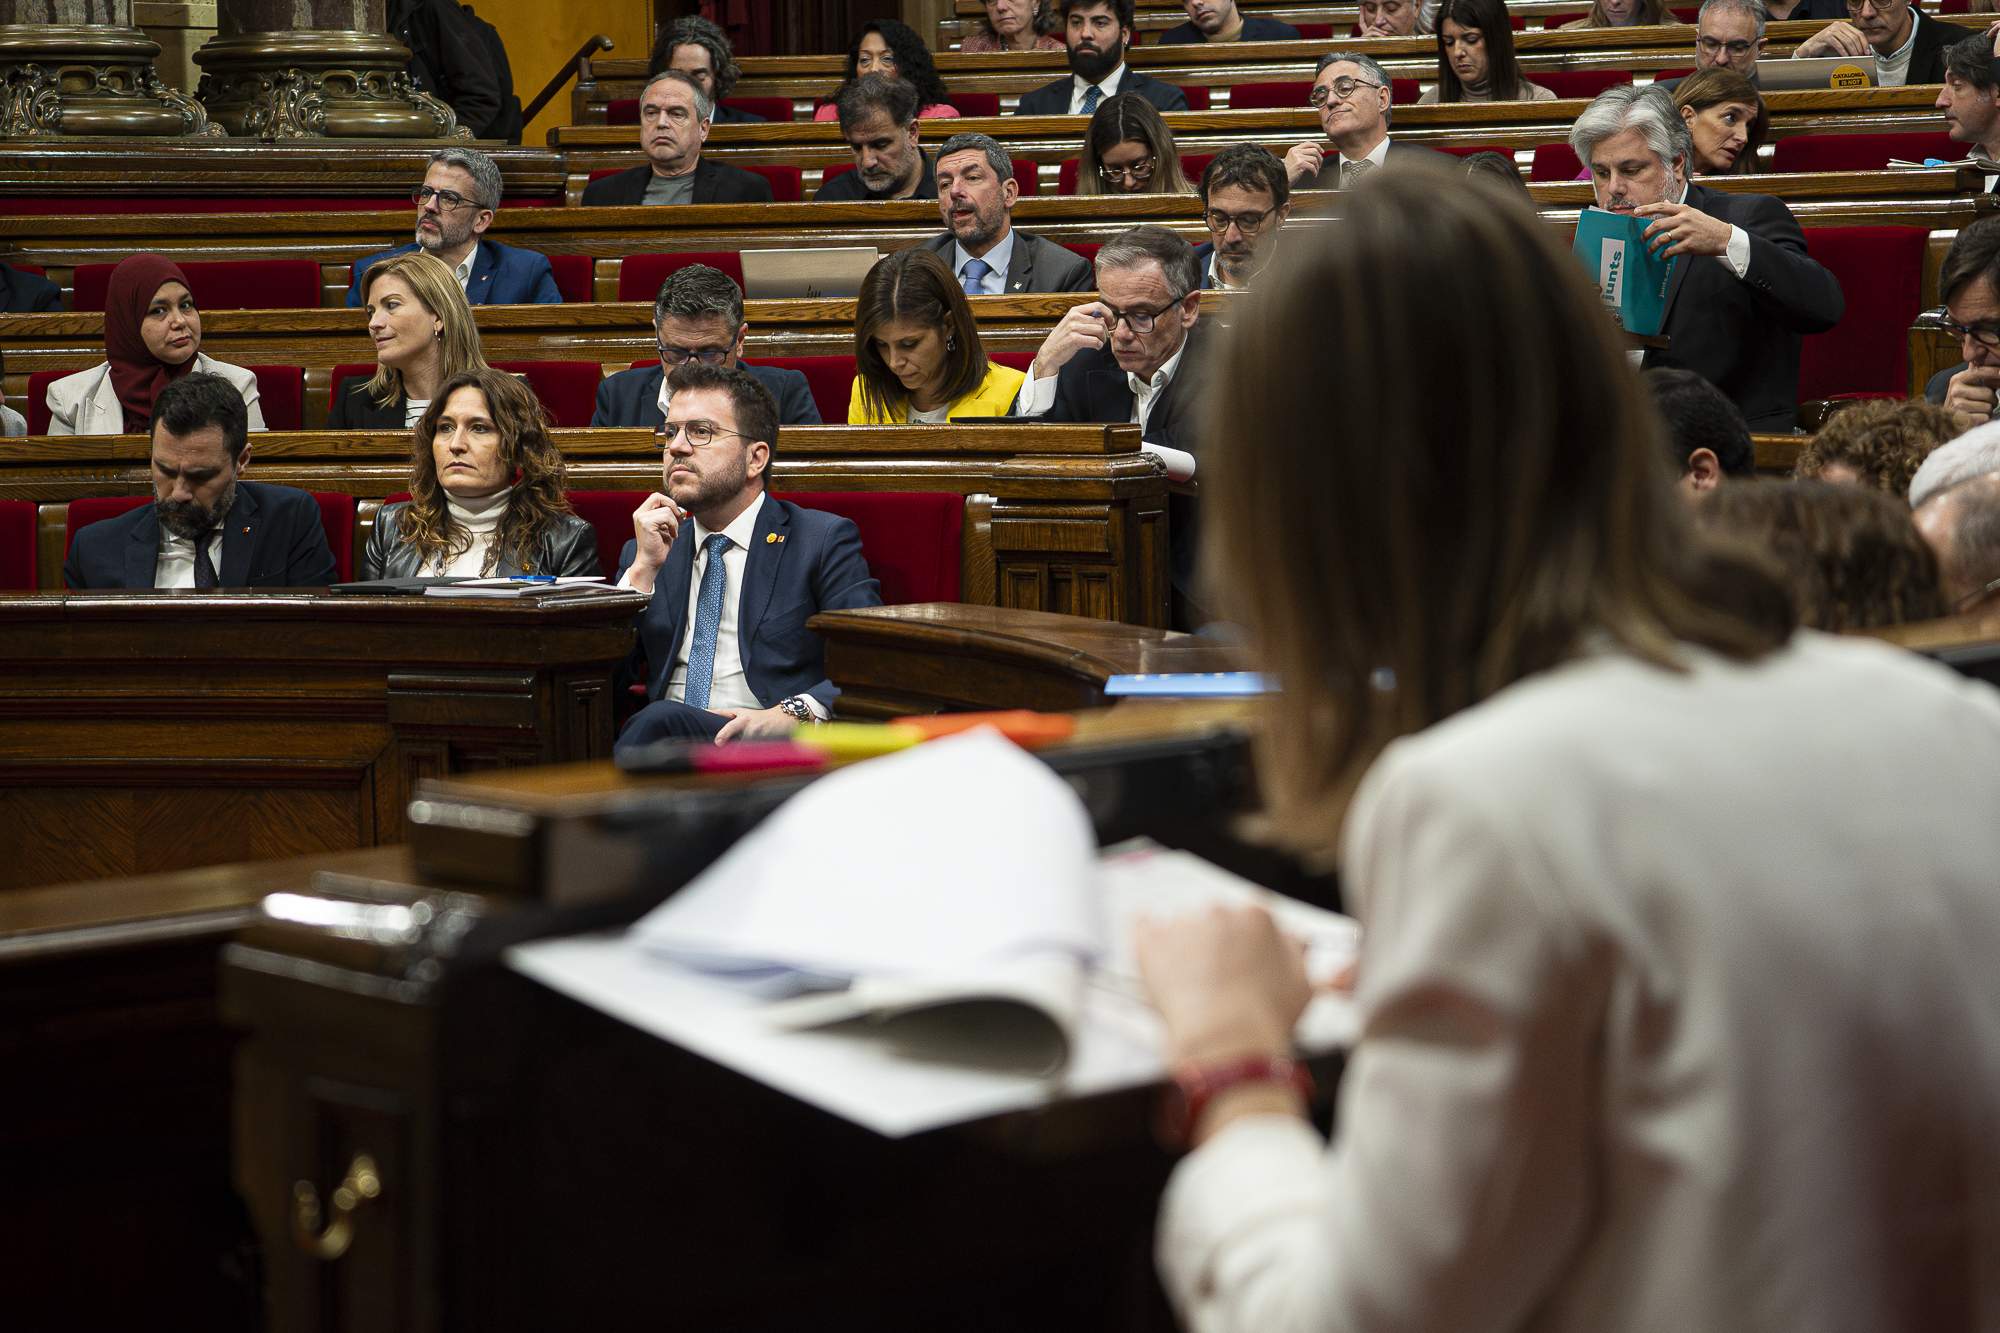 Los comunes tumban los presupuestos de Aragonès y dejan la legislatura en un futuro incierto